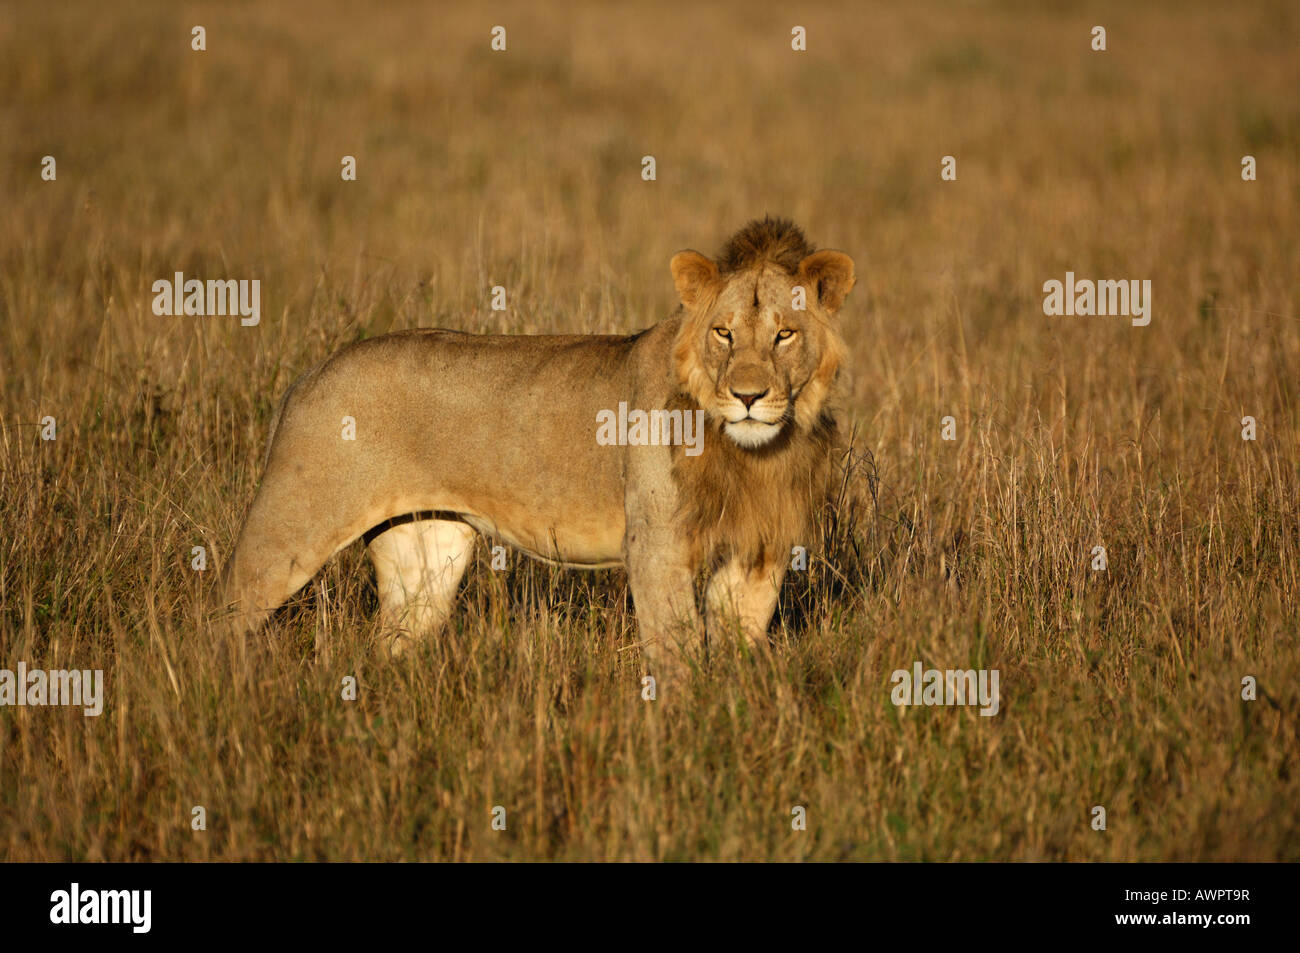 Lion (Panthera leo) in morning light, Masai Mara, Kenya, Africa Stock Photo